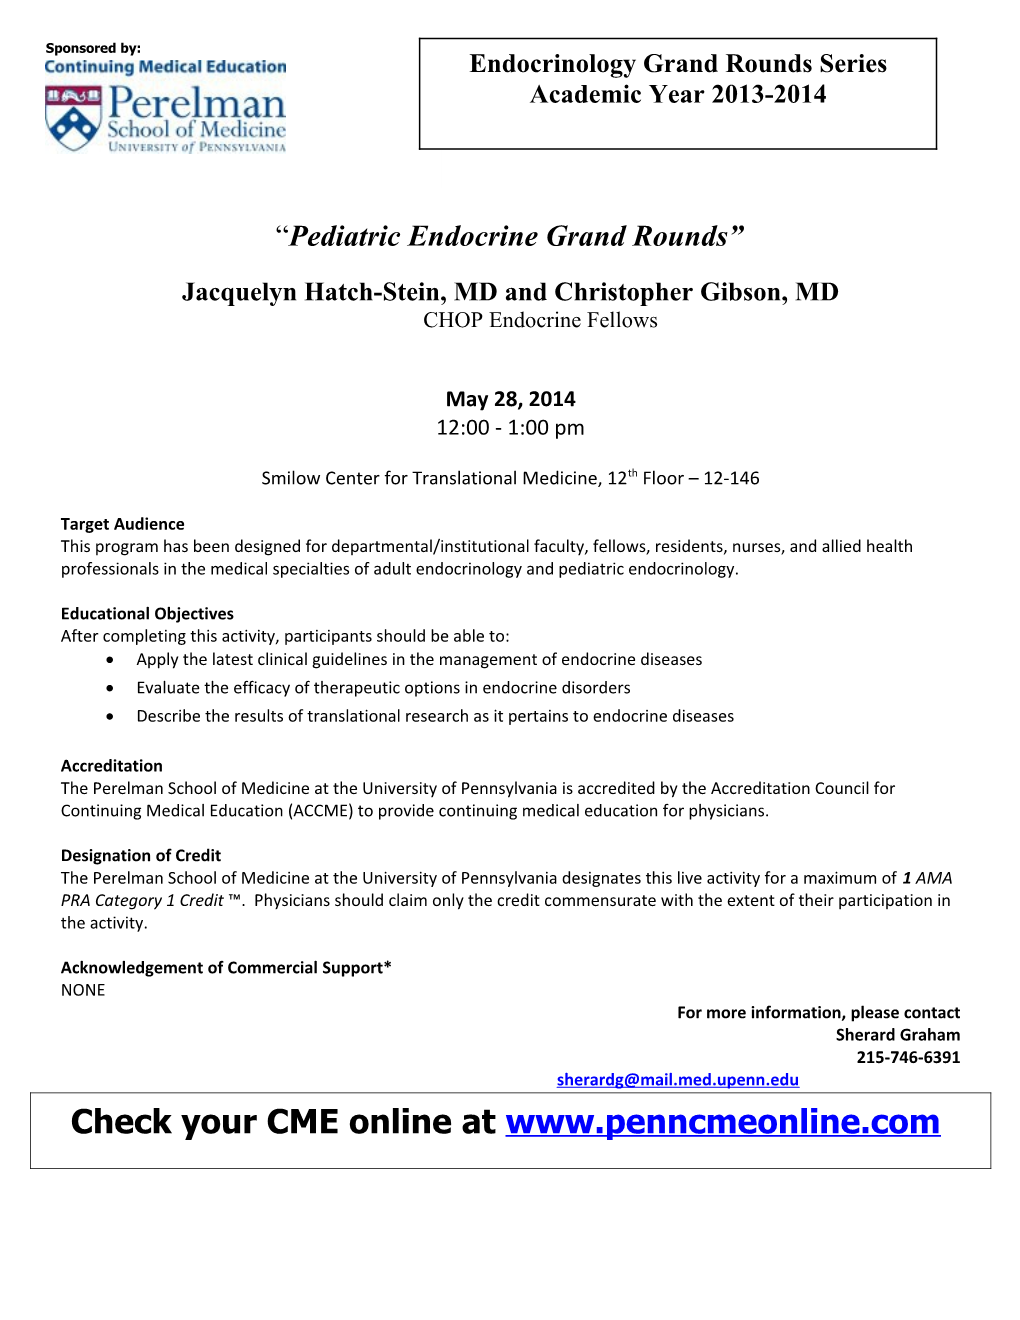 Pediatric Endocrine Grand Rounds